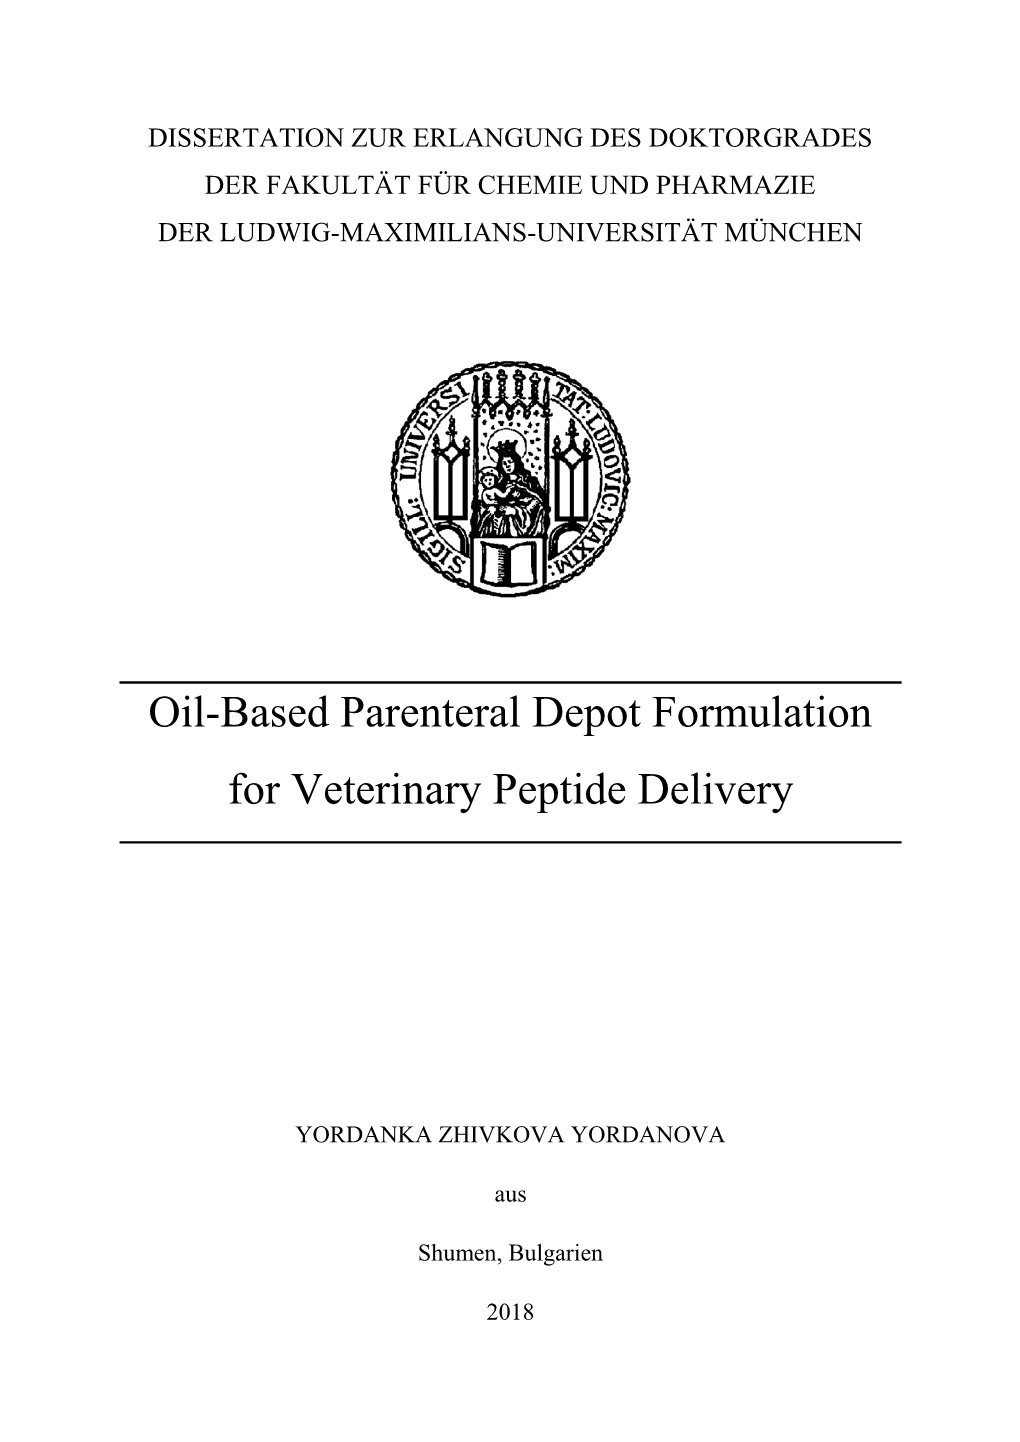 Oil-Based Parenteral Depot Formulation for Veterinary Peptide Delivery